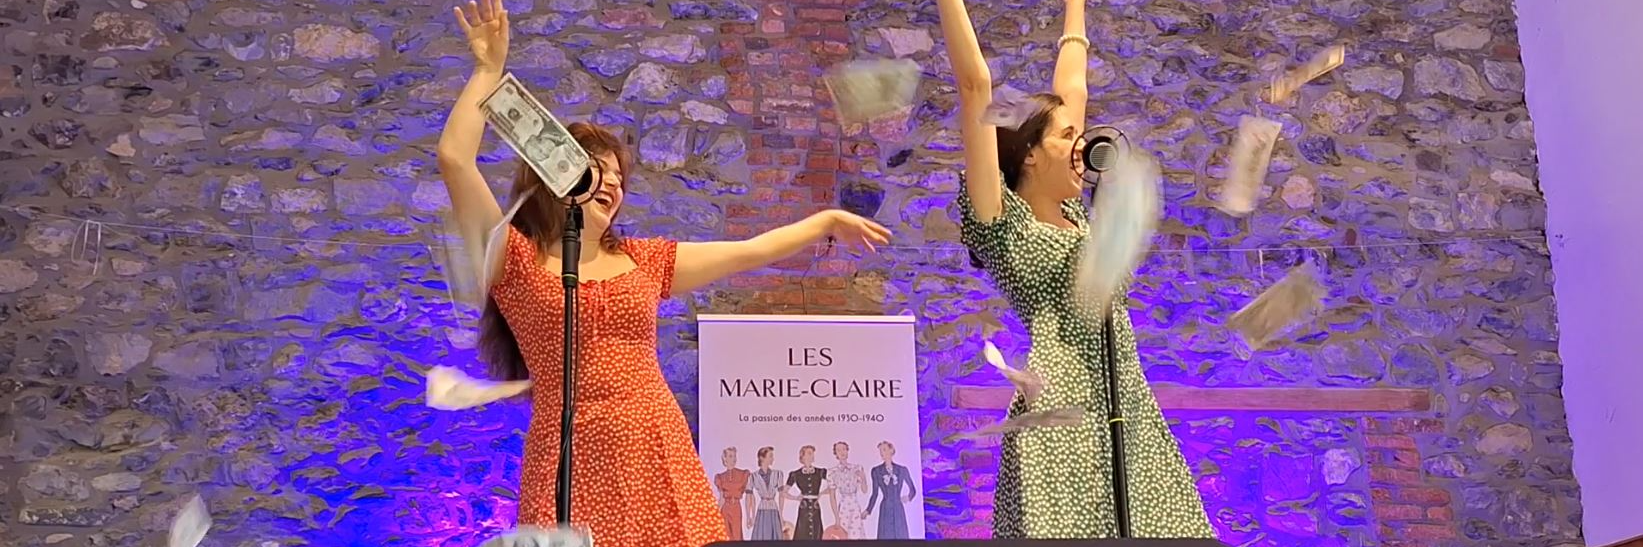 Les Marie-Claire, groupe de musique Swing en représentation à Province de Liège - photo de couverture n° 1